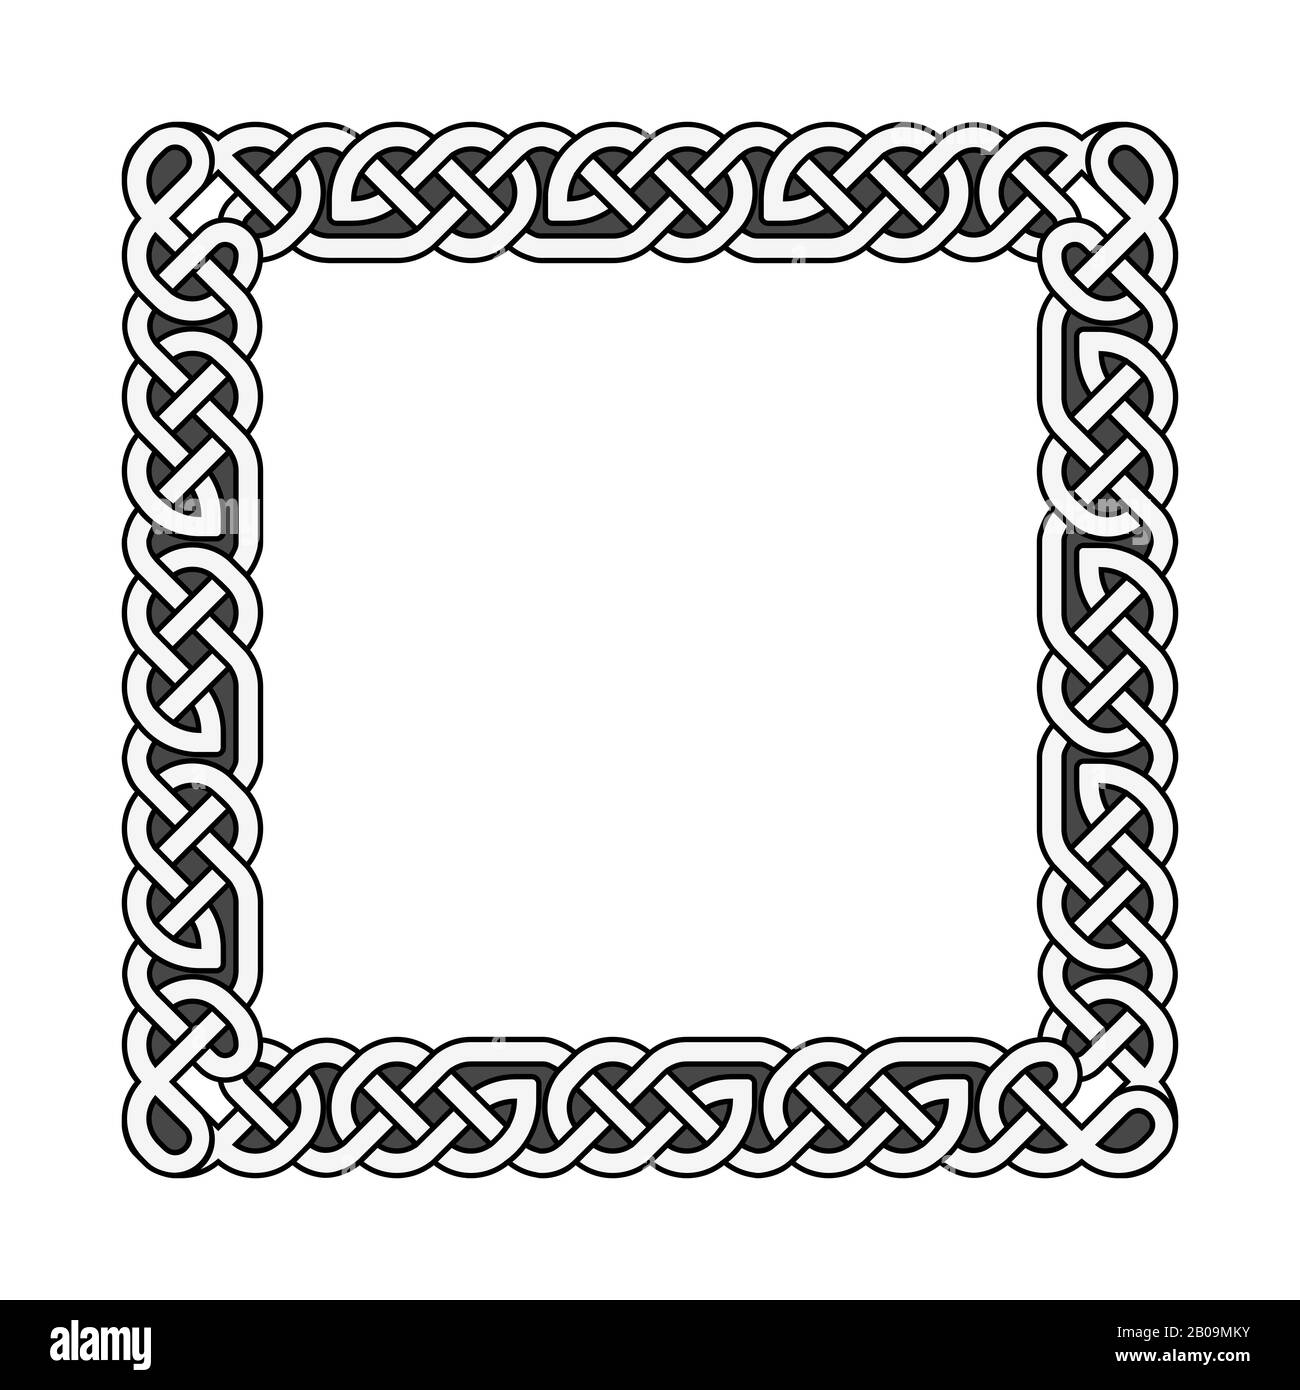 Nodi quadrati celtici vettore cornice medievale in bianco e nero. Illustrazione tradizionale del modello di cornice Illustrazione Vettoriale